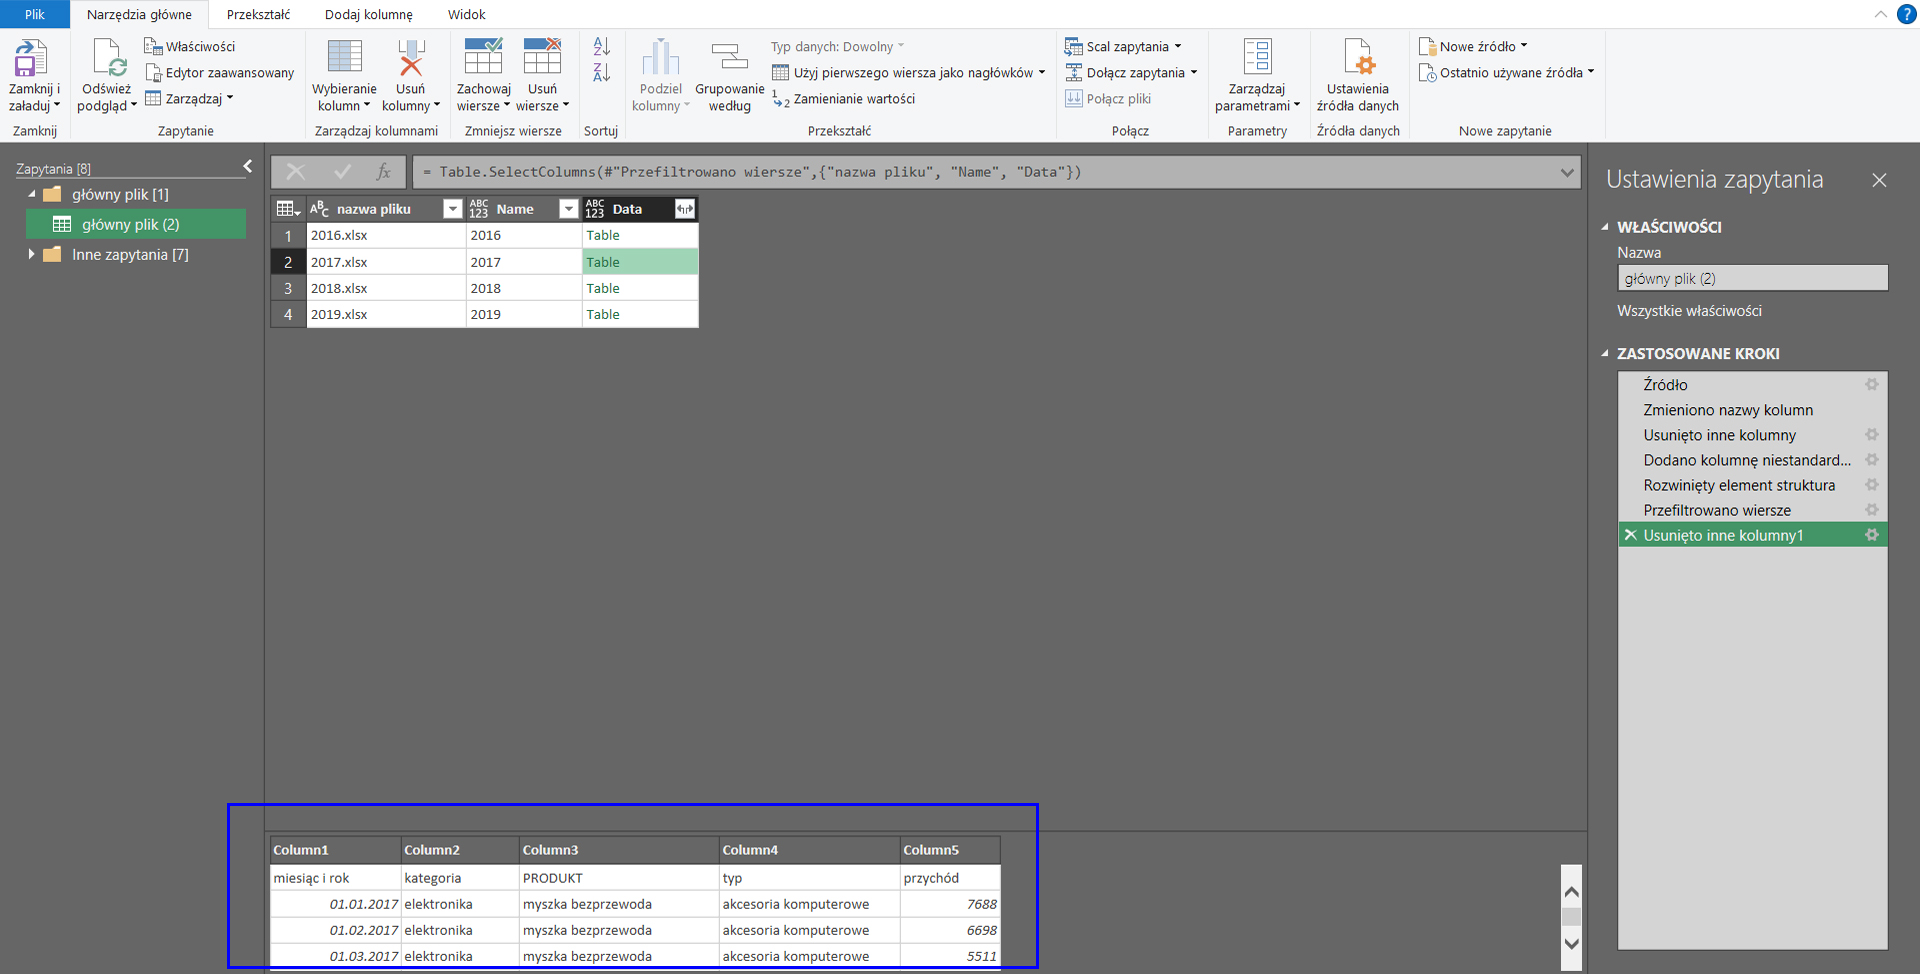 Power Query And Excel łączenie Plików Excela Z Folderu Według Kolejności Kolumn 7100